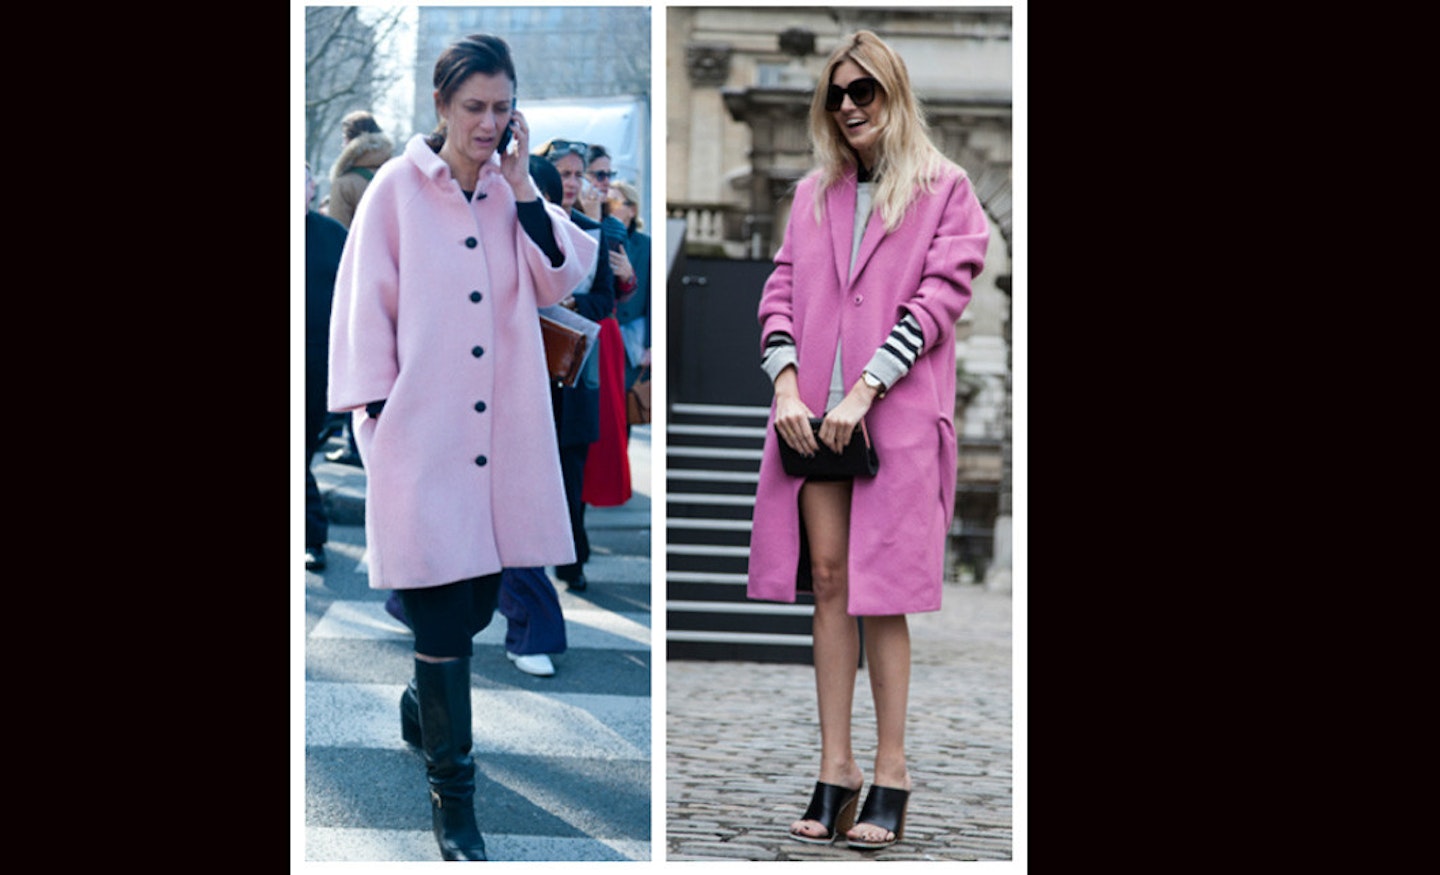 Pink Coat